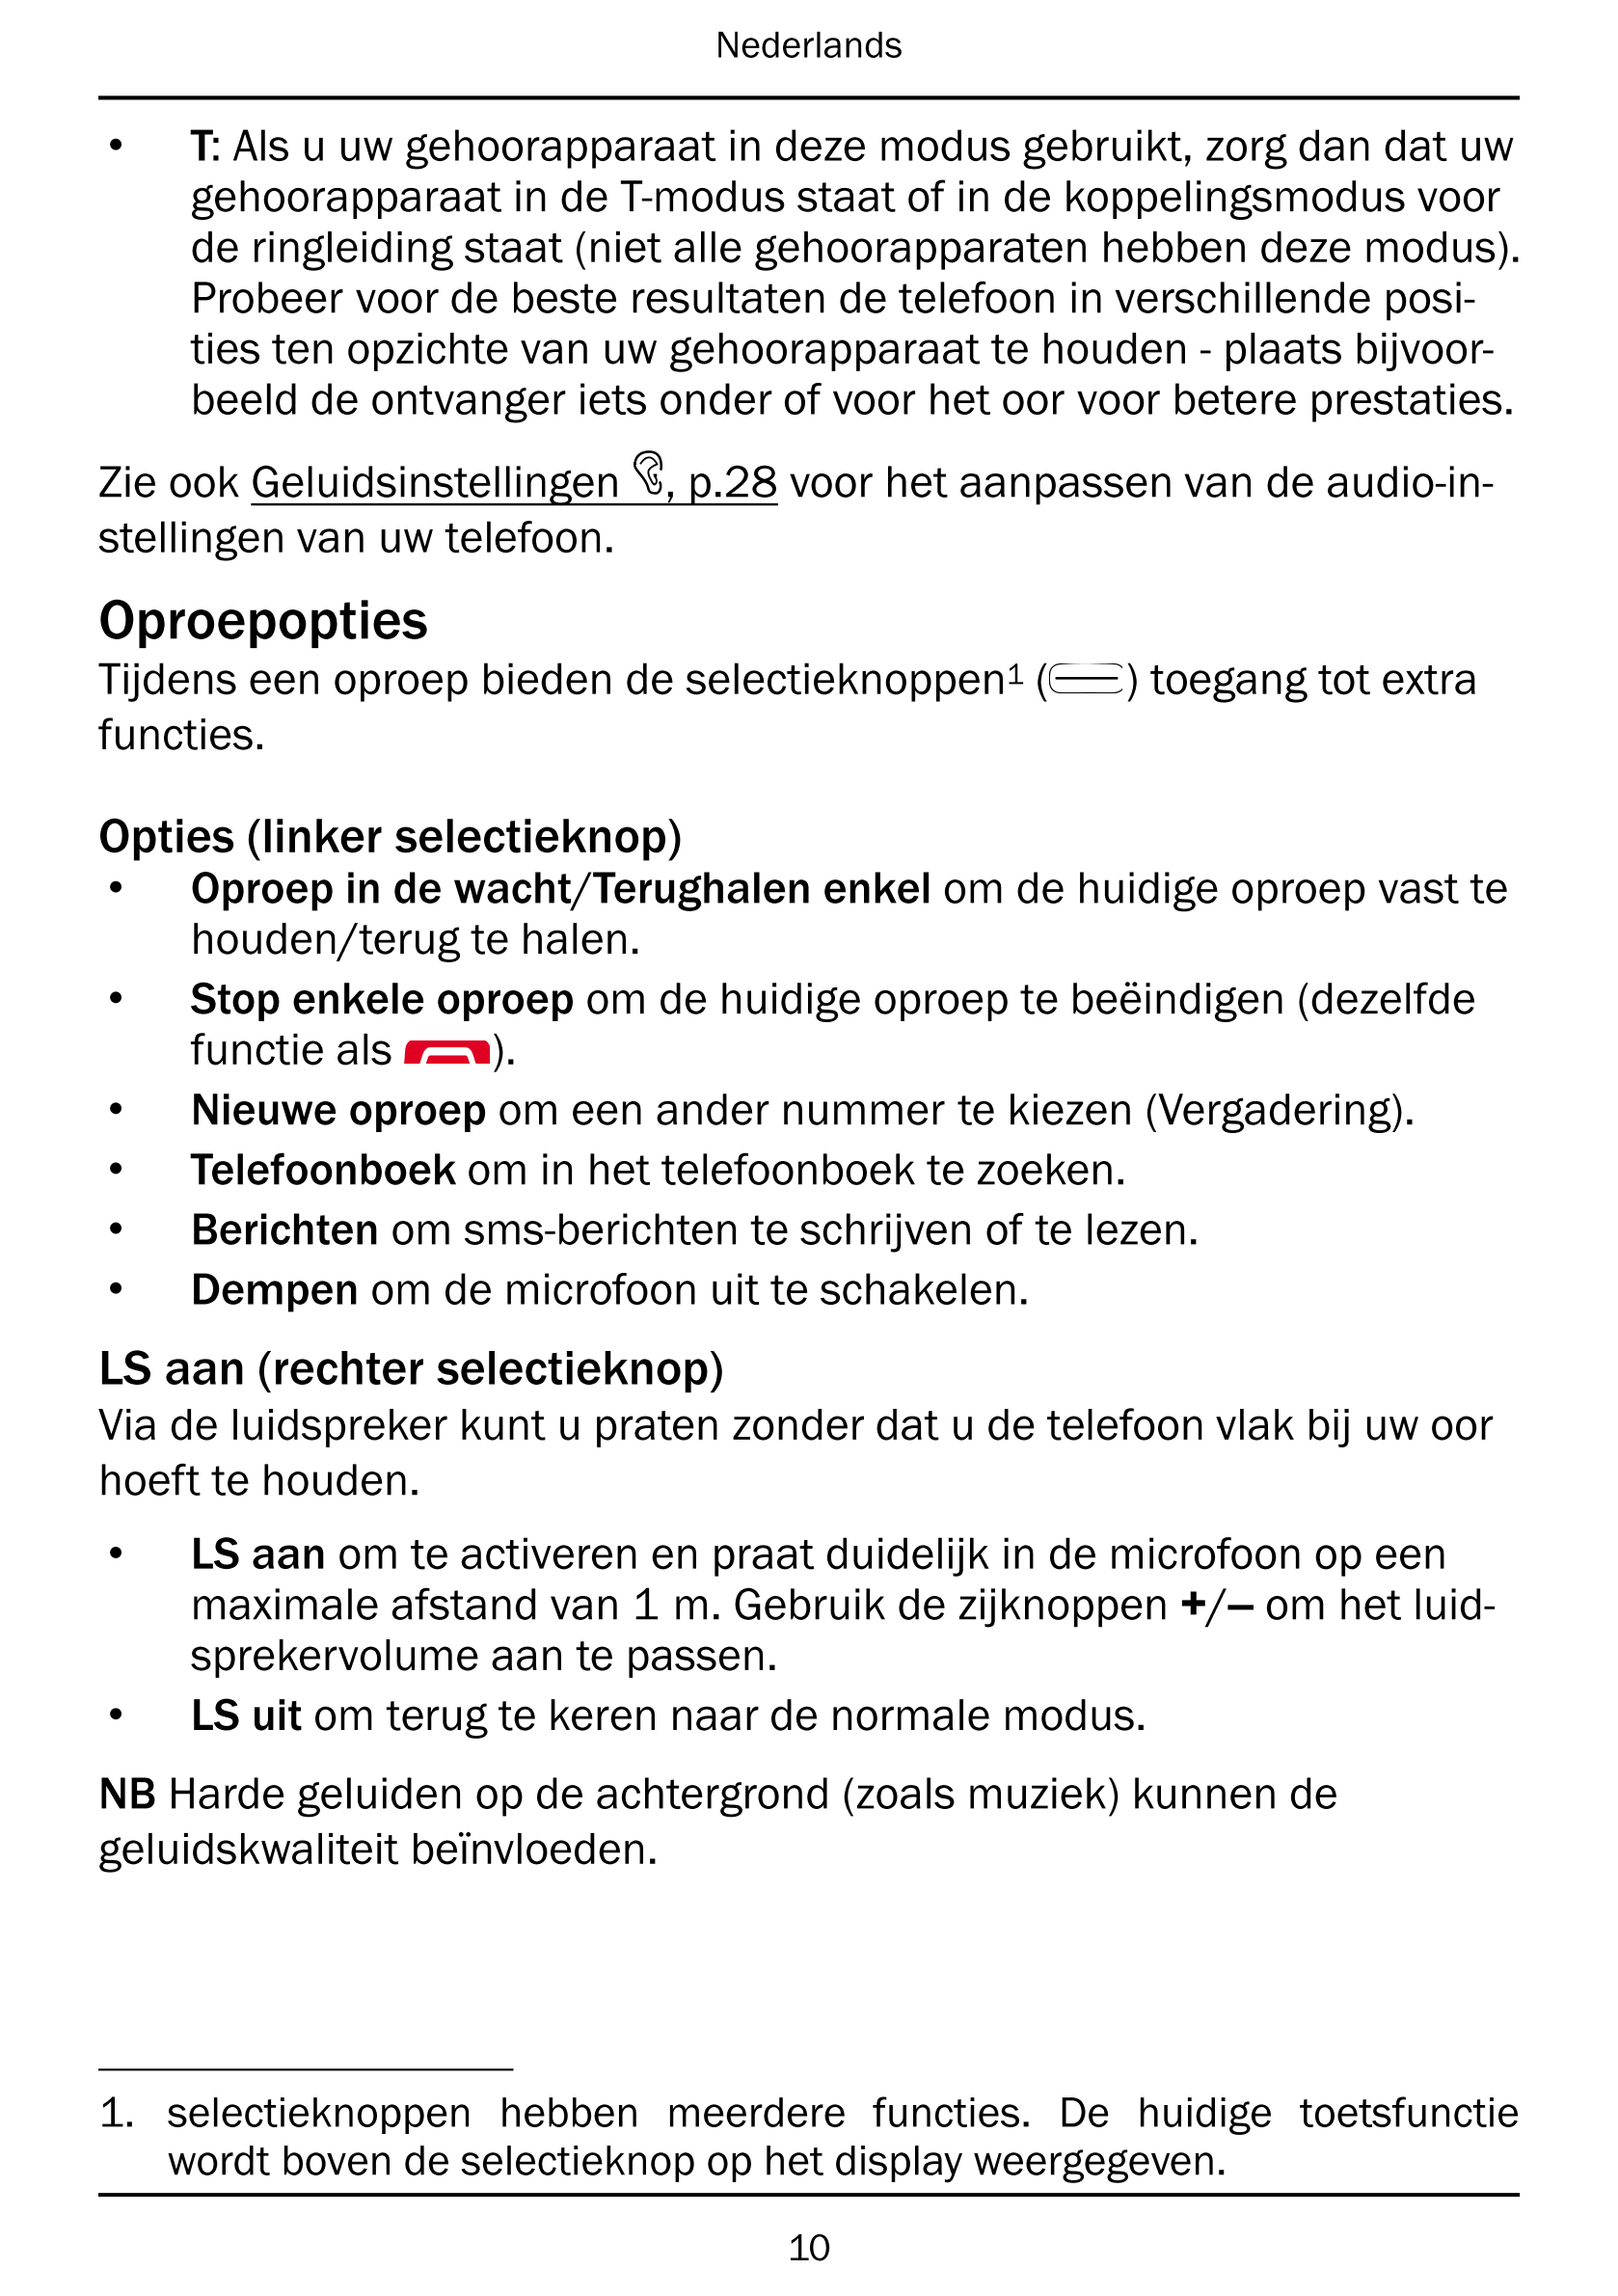 Nederlands
• T: Als u uw gehoorapparaat in deze modus gebruikt, zorg dan dat uw
gehoorapparaat in de T-modus staat of in de kopp